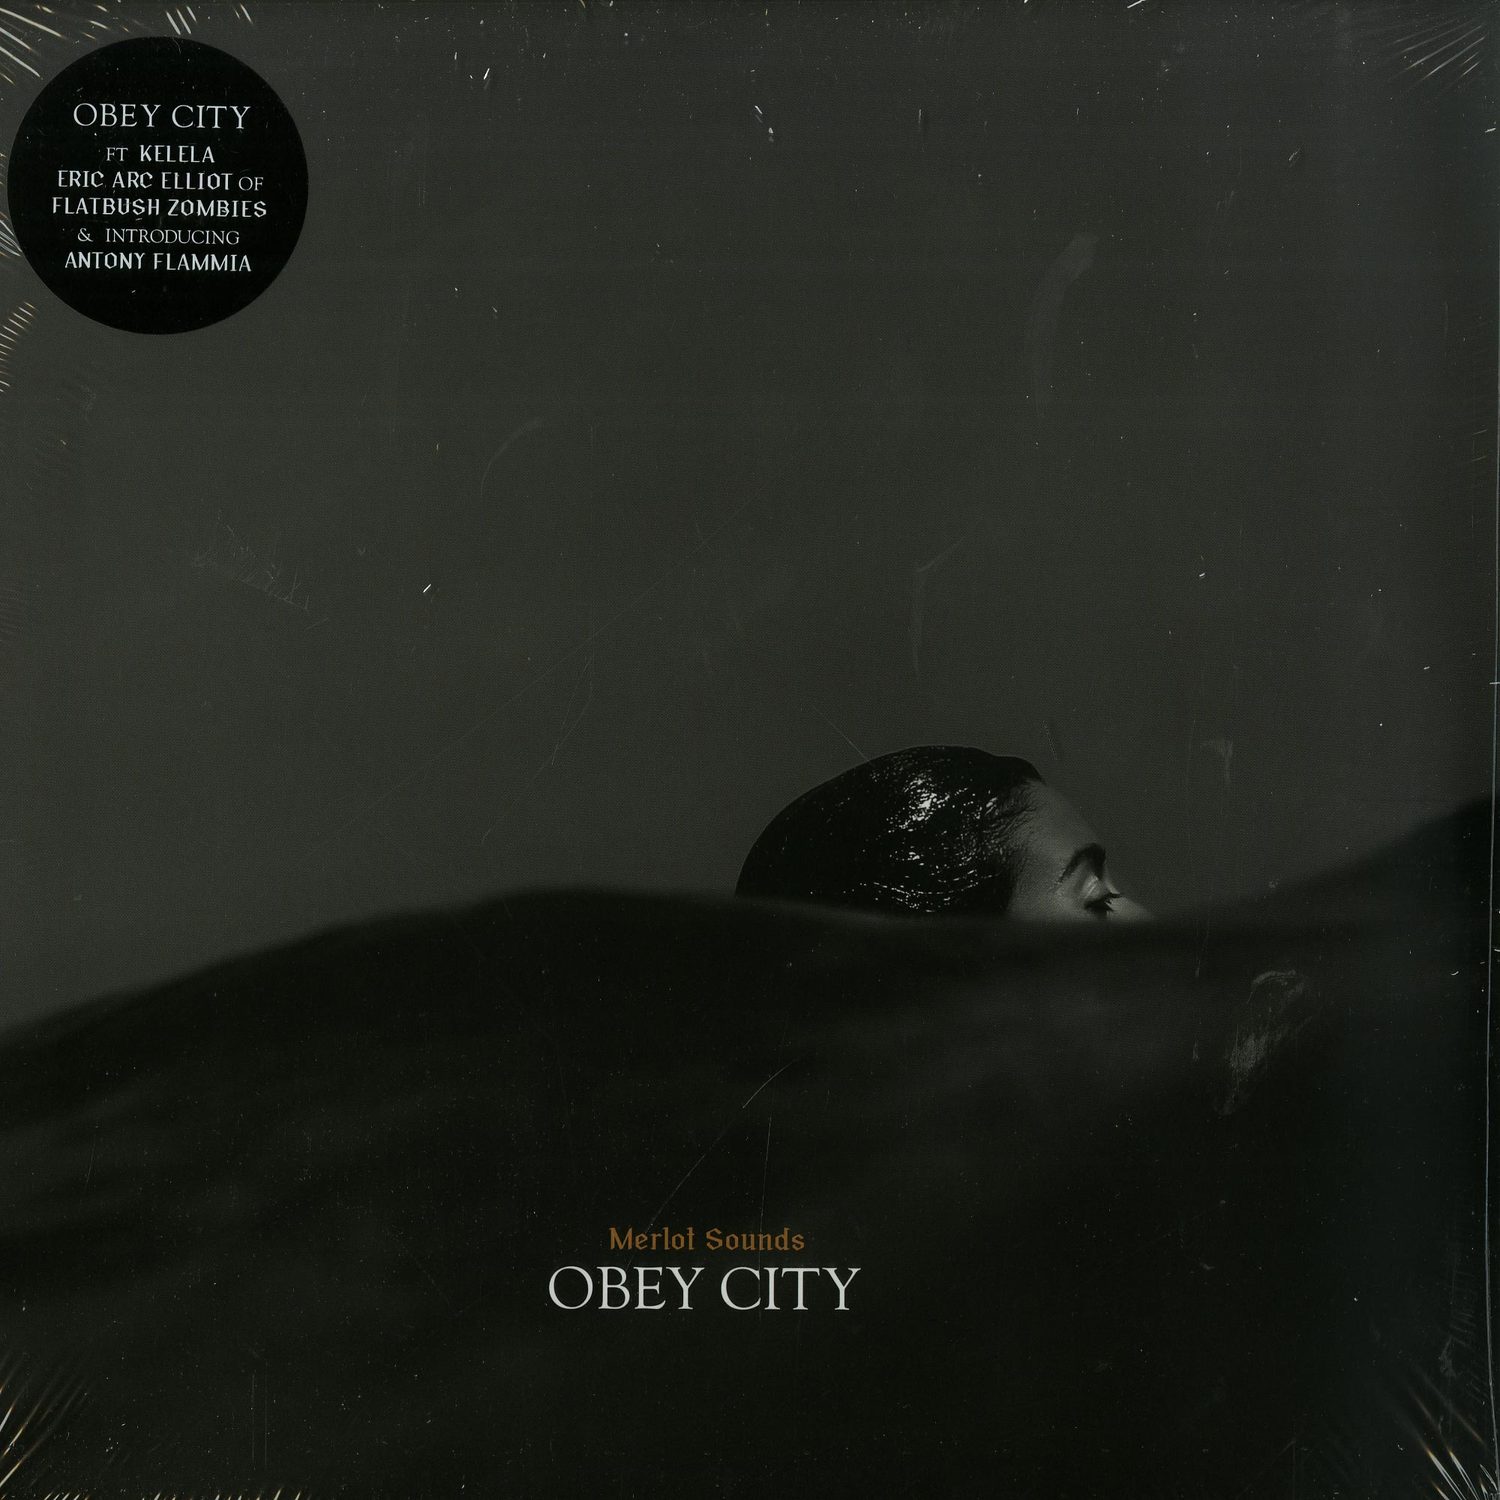 Obey City - MERLOT SOUNDS